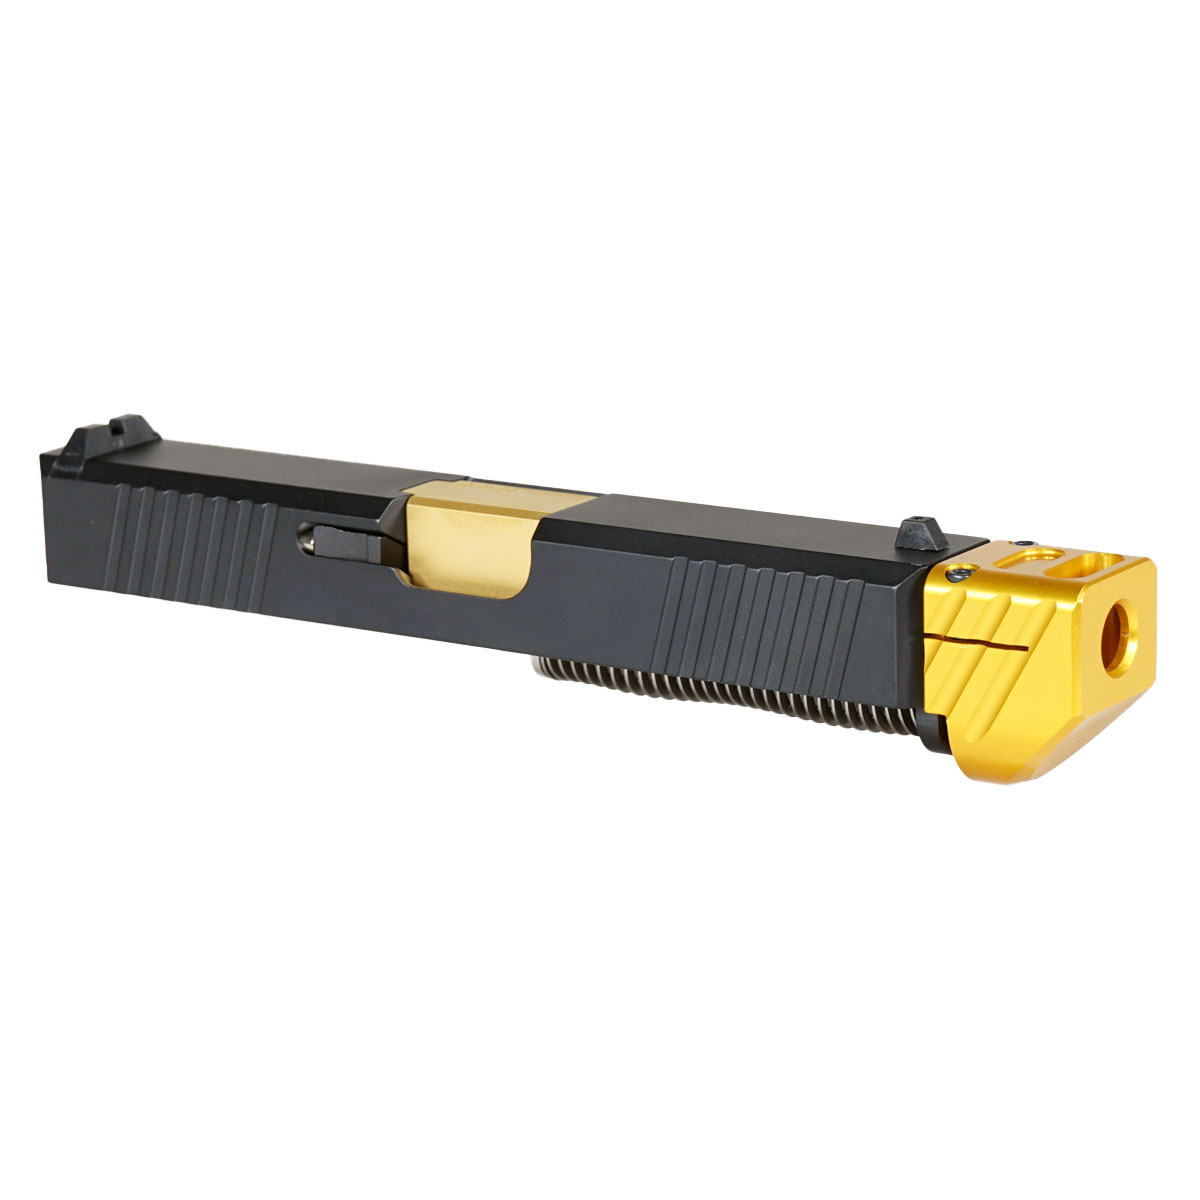 OTD 'Oakley V2 w/ Gold Compensator' 9mm Complete Slide Kit - Glock 19 Gen 1-3 Compatible